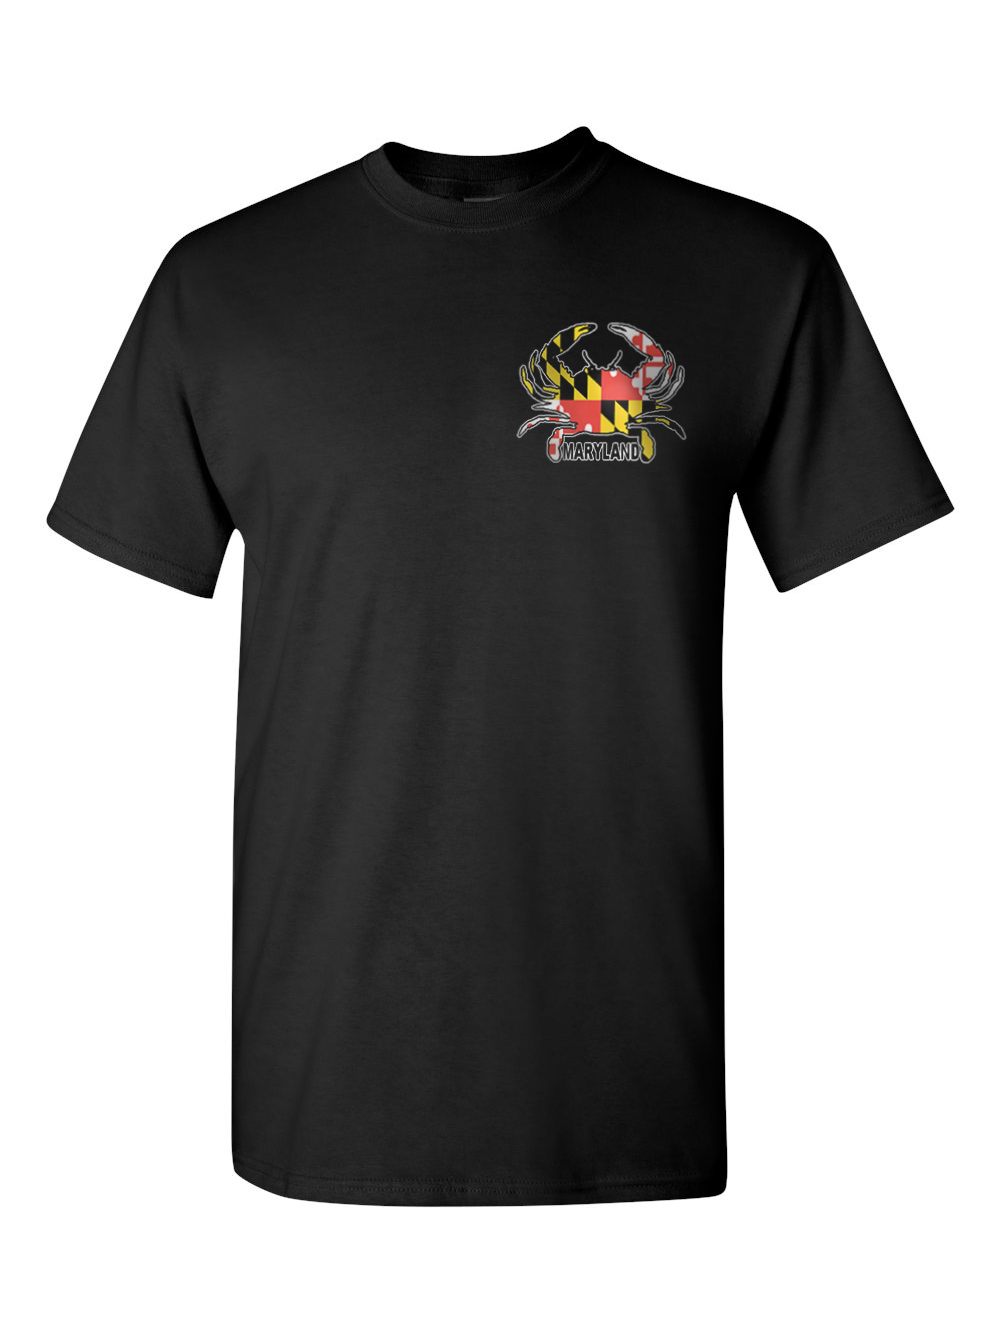 Maryland Small Crab T-Shirt (Black)